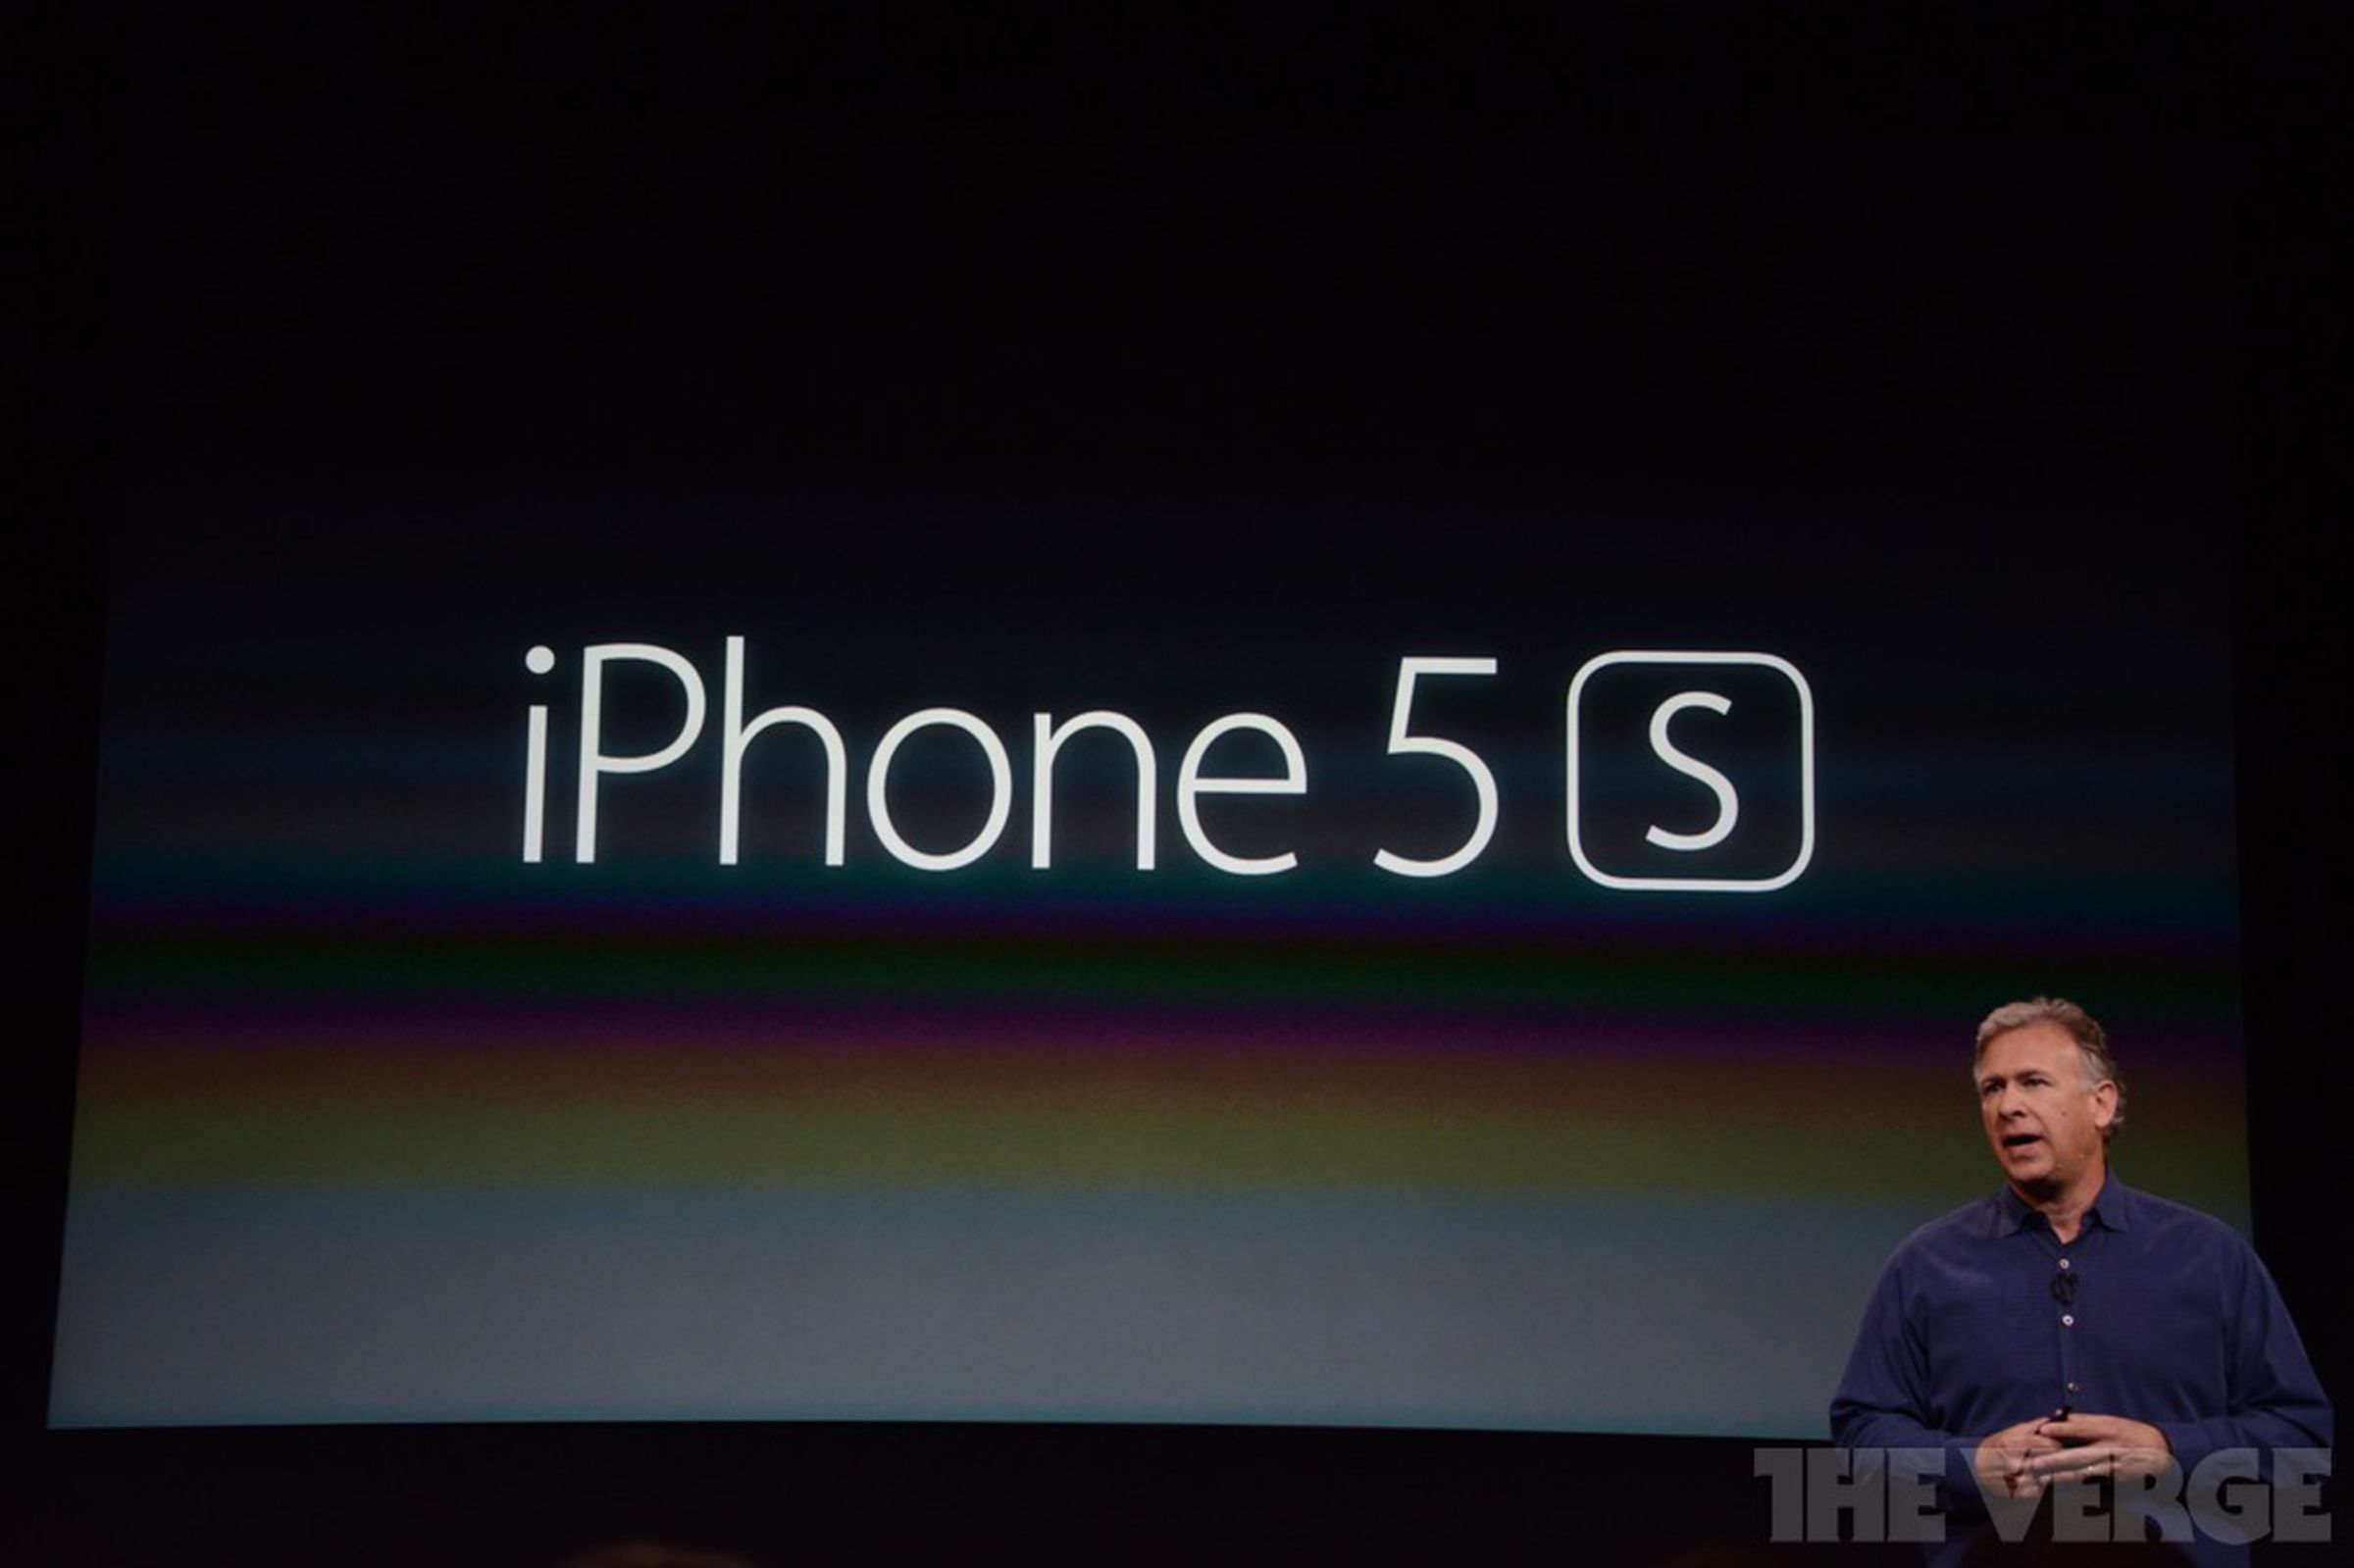 iPhone 5s announce photos